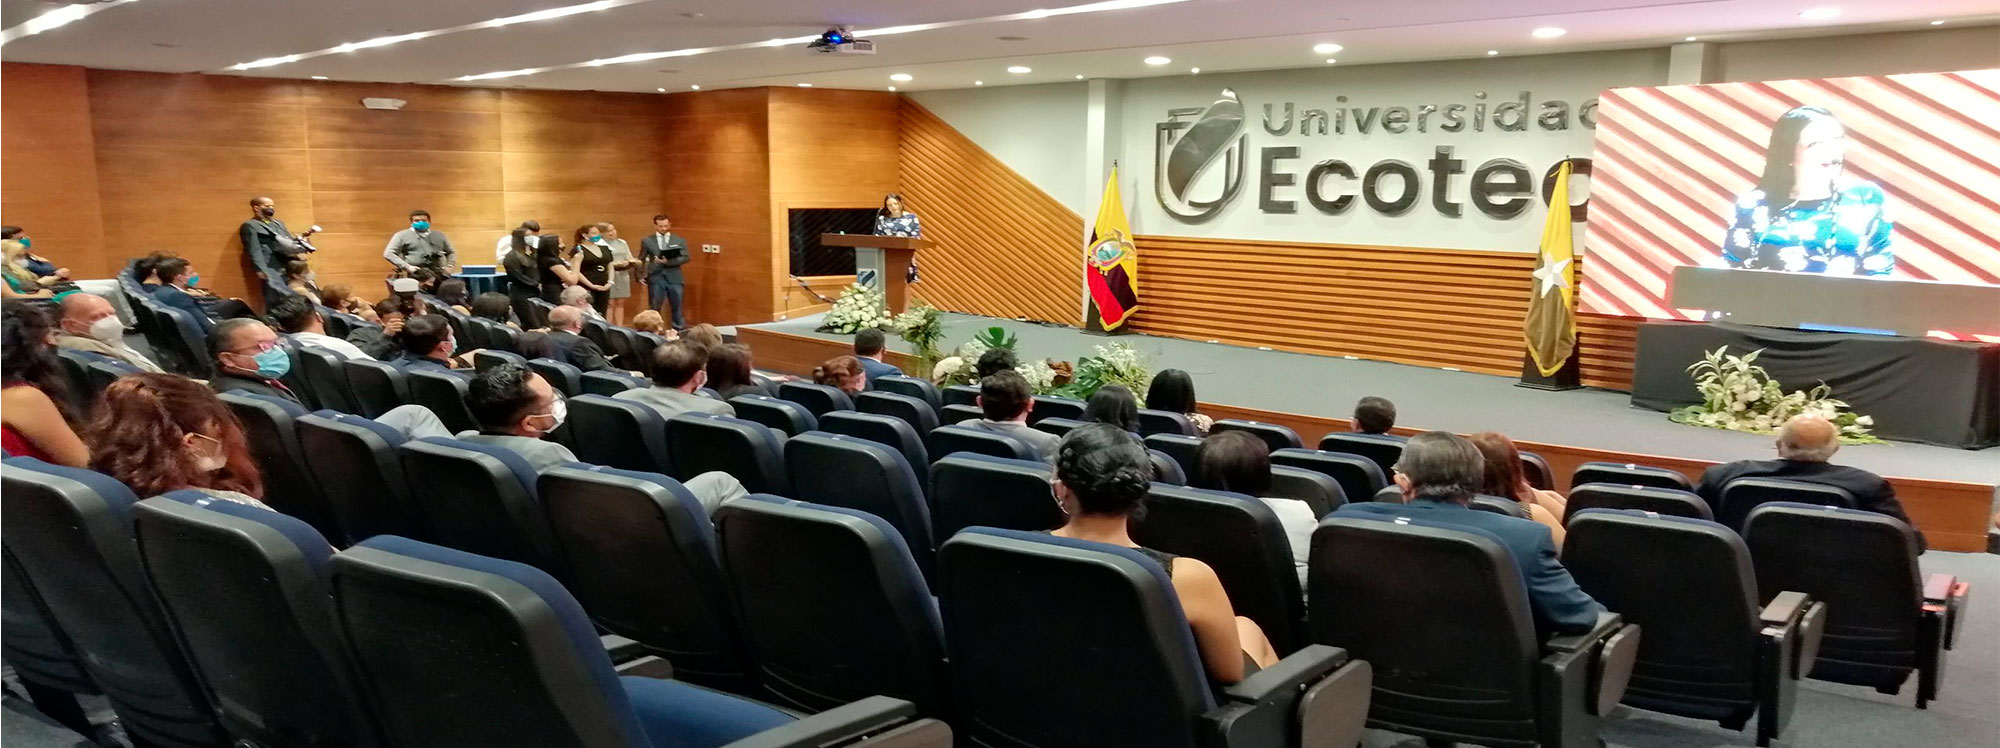 Ecotec premió la Comunicación, el Arte y la Cultura